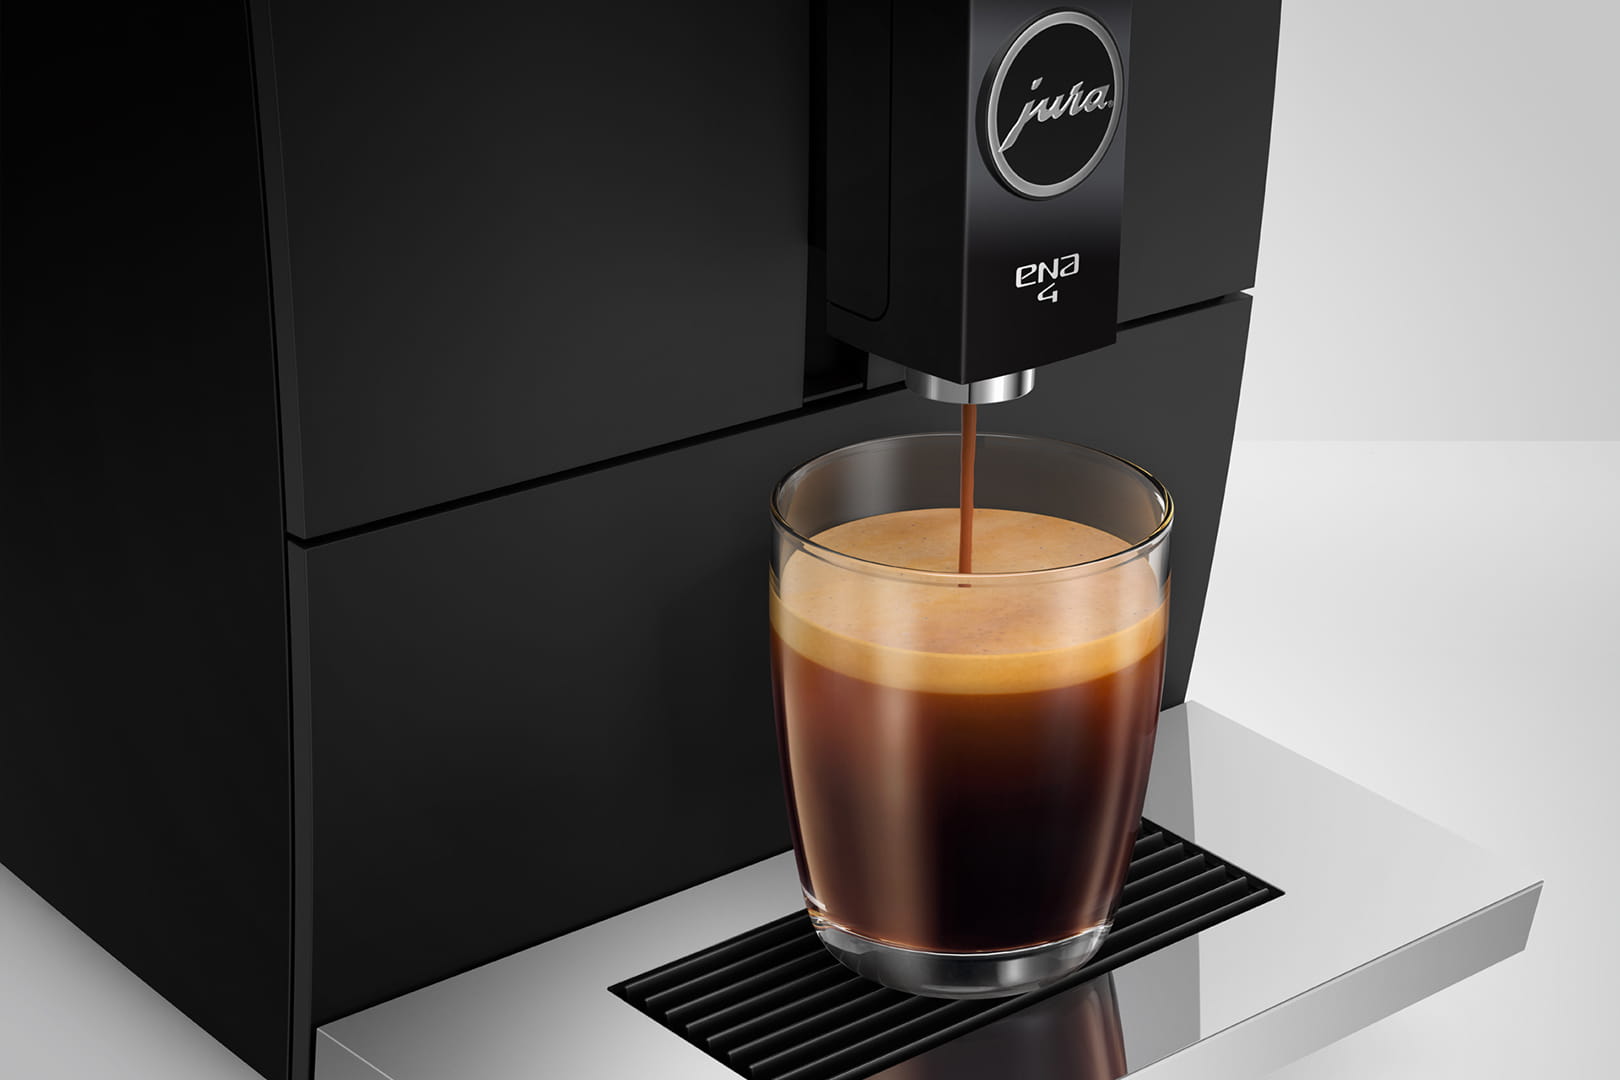 JURA全自動コーヒーマシン シリーズ ENA4 フルメトロポリタンブラック